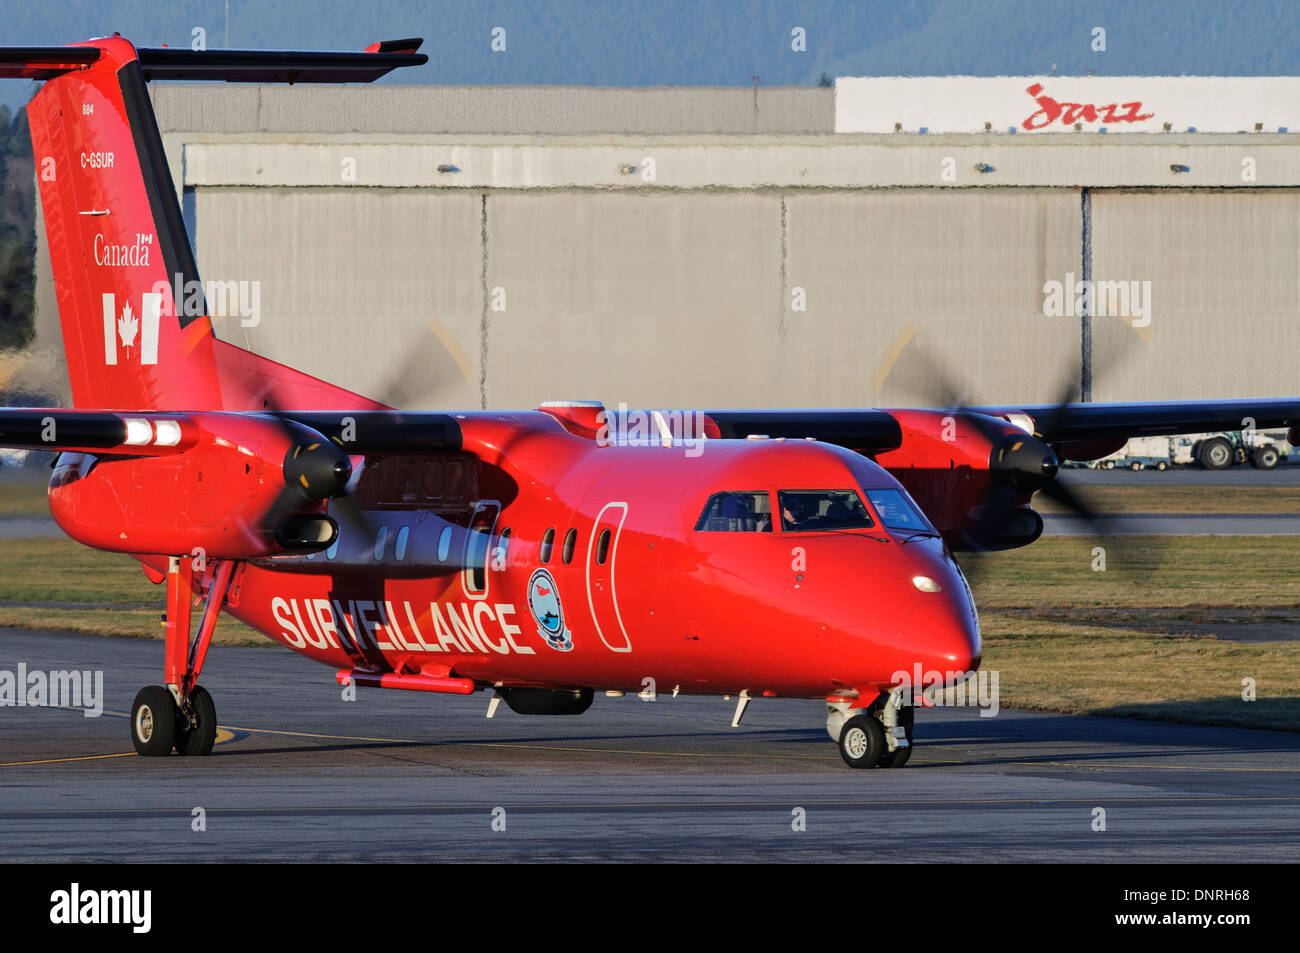 Transporte Canadá Dash 8 aviones de vigilancia aérea marítima C-GSUR taxis de aeropuerto asfalto después de patrulla de la costa de Canadá Foto de stock